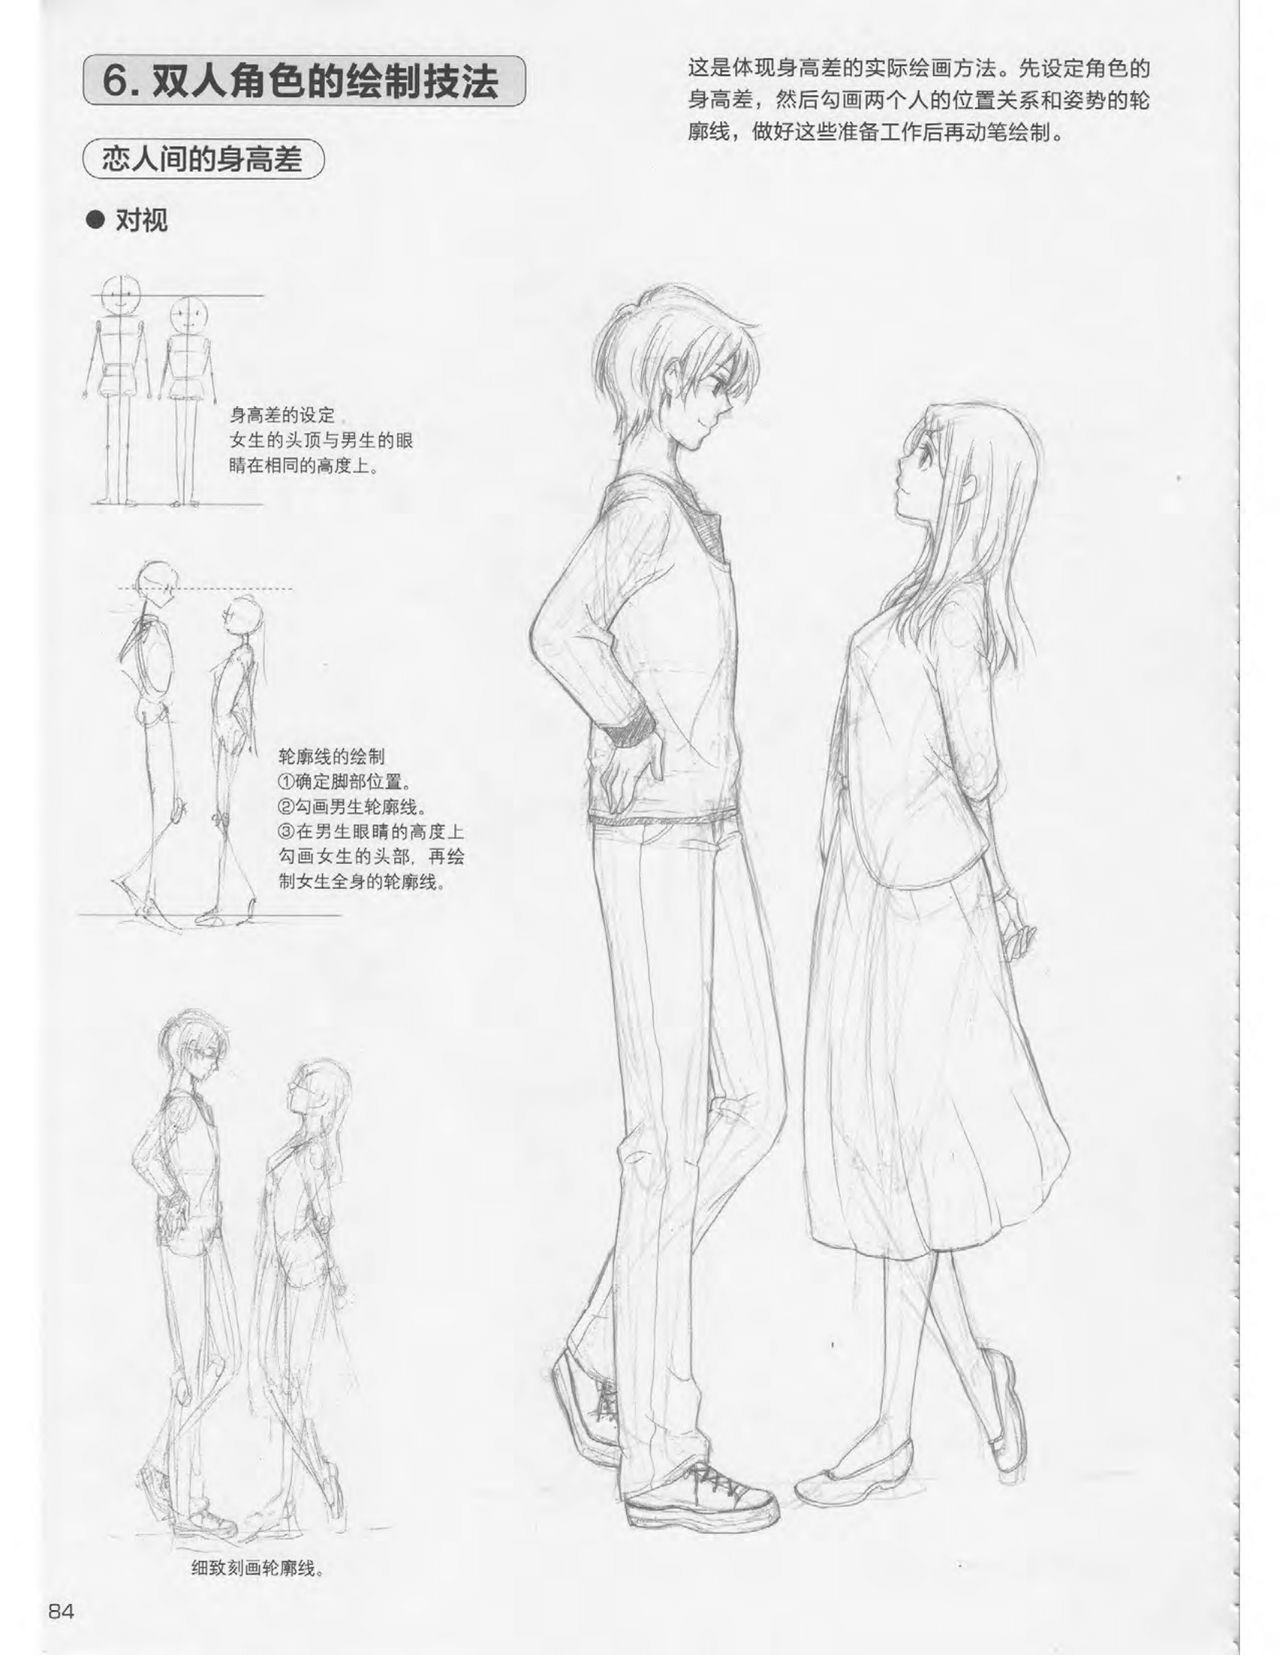 Japanese Manga Master Lecture 3: Lin Akira and Kakumaru Maru Talk About Glamorous Character Modeling 84